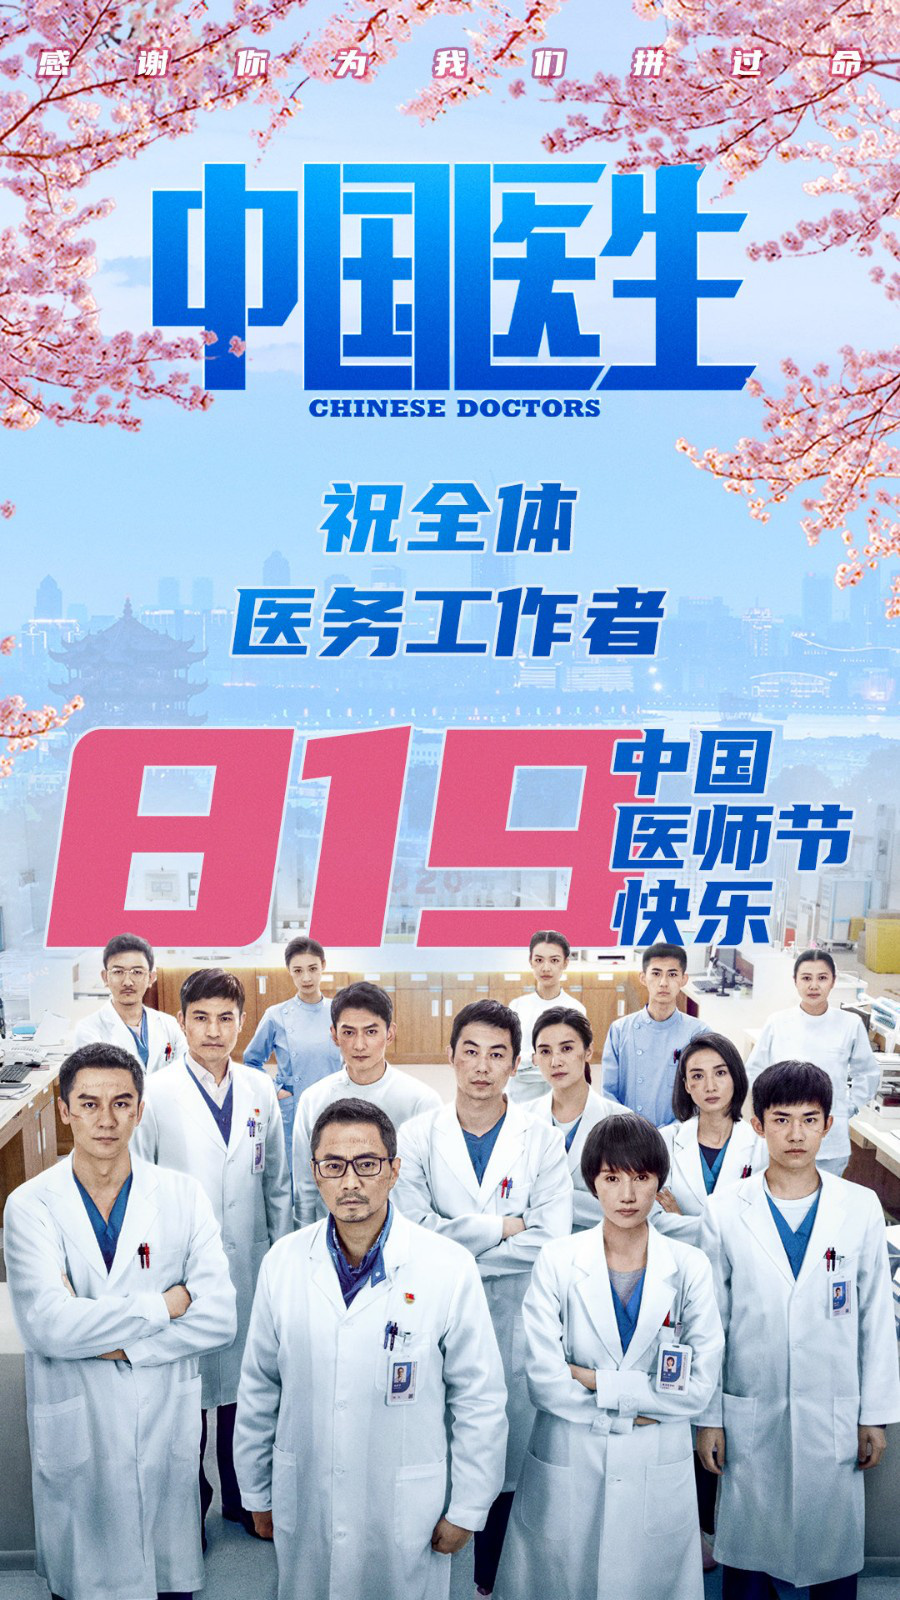 《中国医生》发布8.19医师节海报